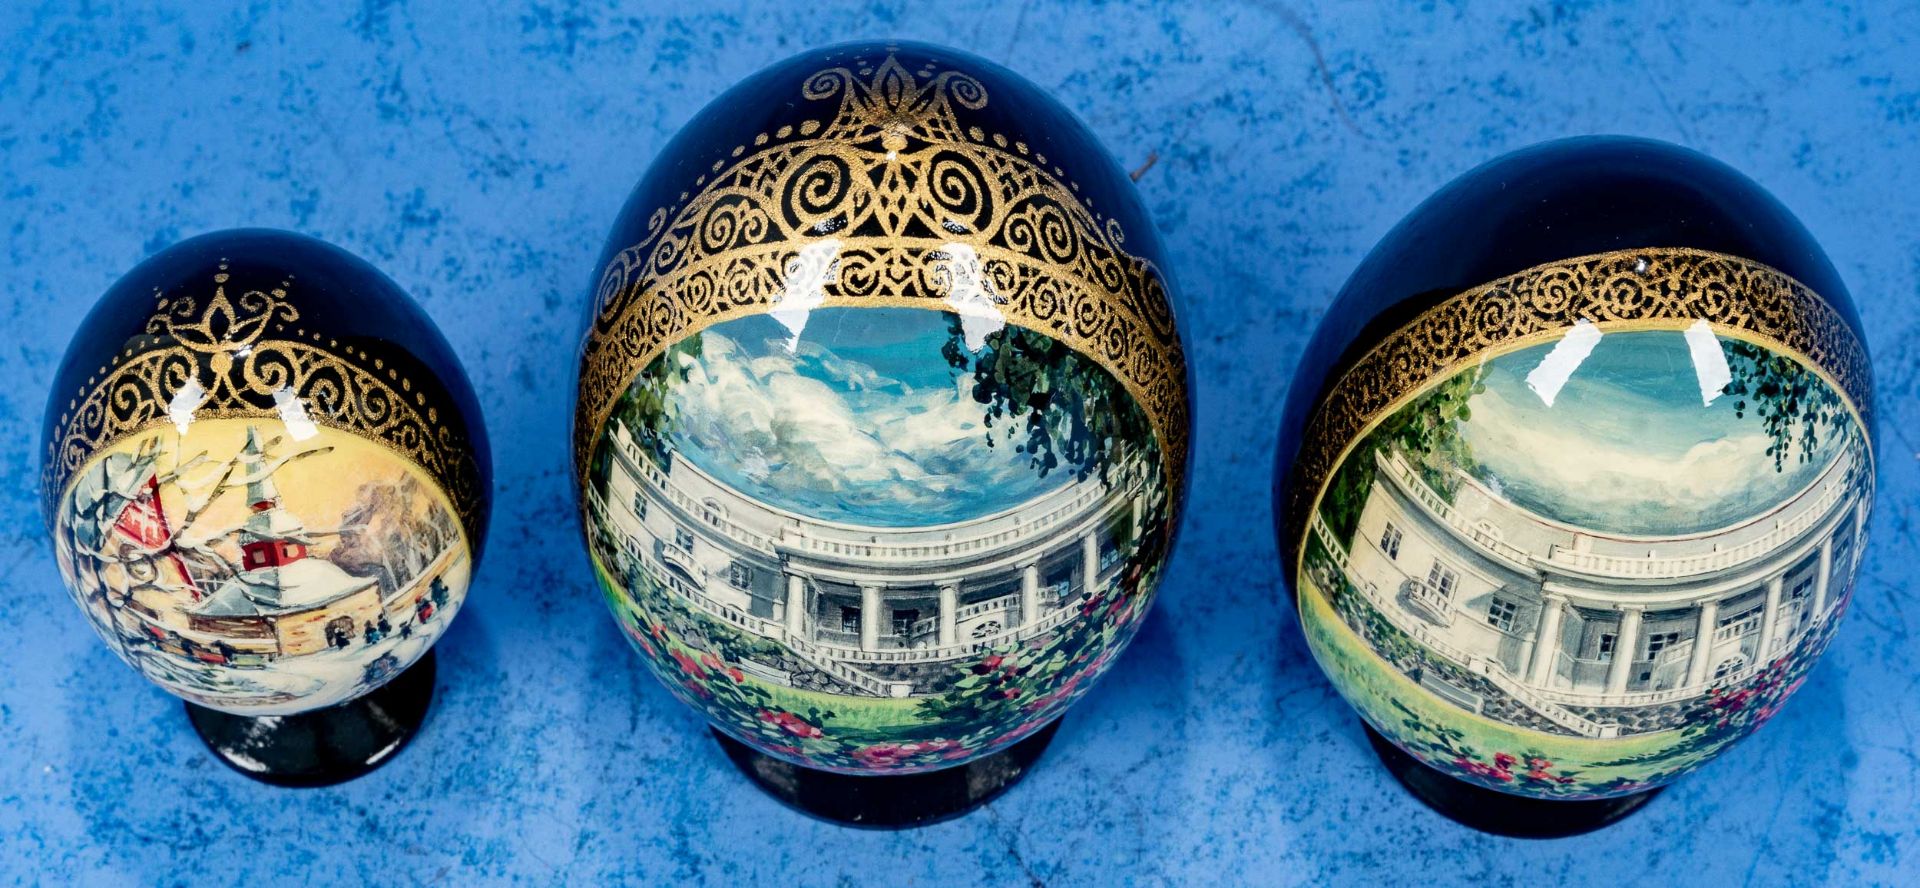 3tlg. Sammlung "Russischer Eier", russisches Kunsthandwerk des 20./ 21. Jhdts., alle 3 bodenseitig  - Bild 3 aus 7